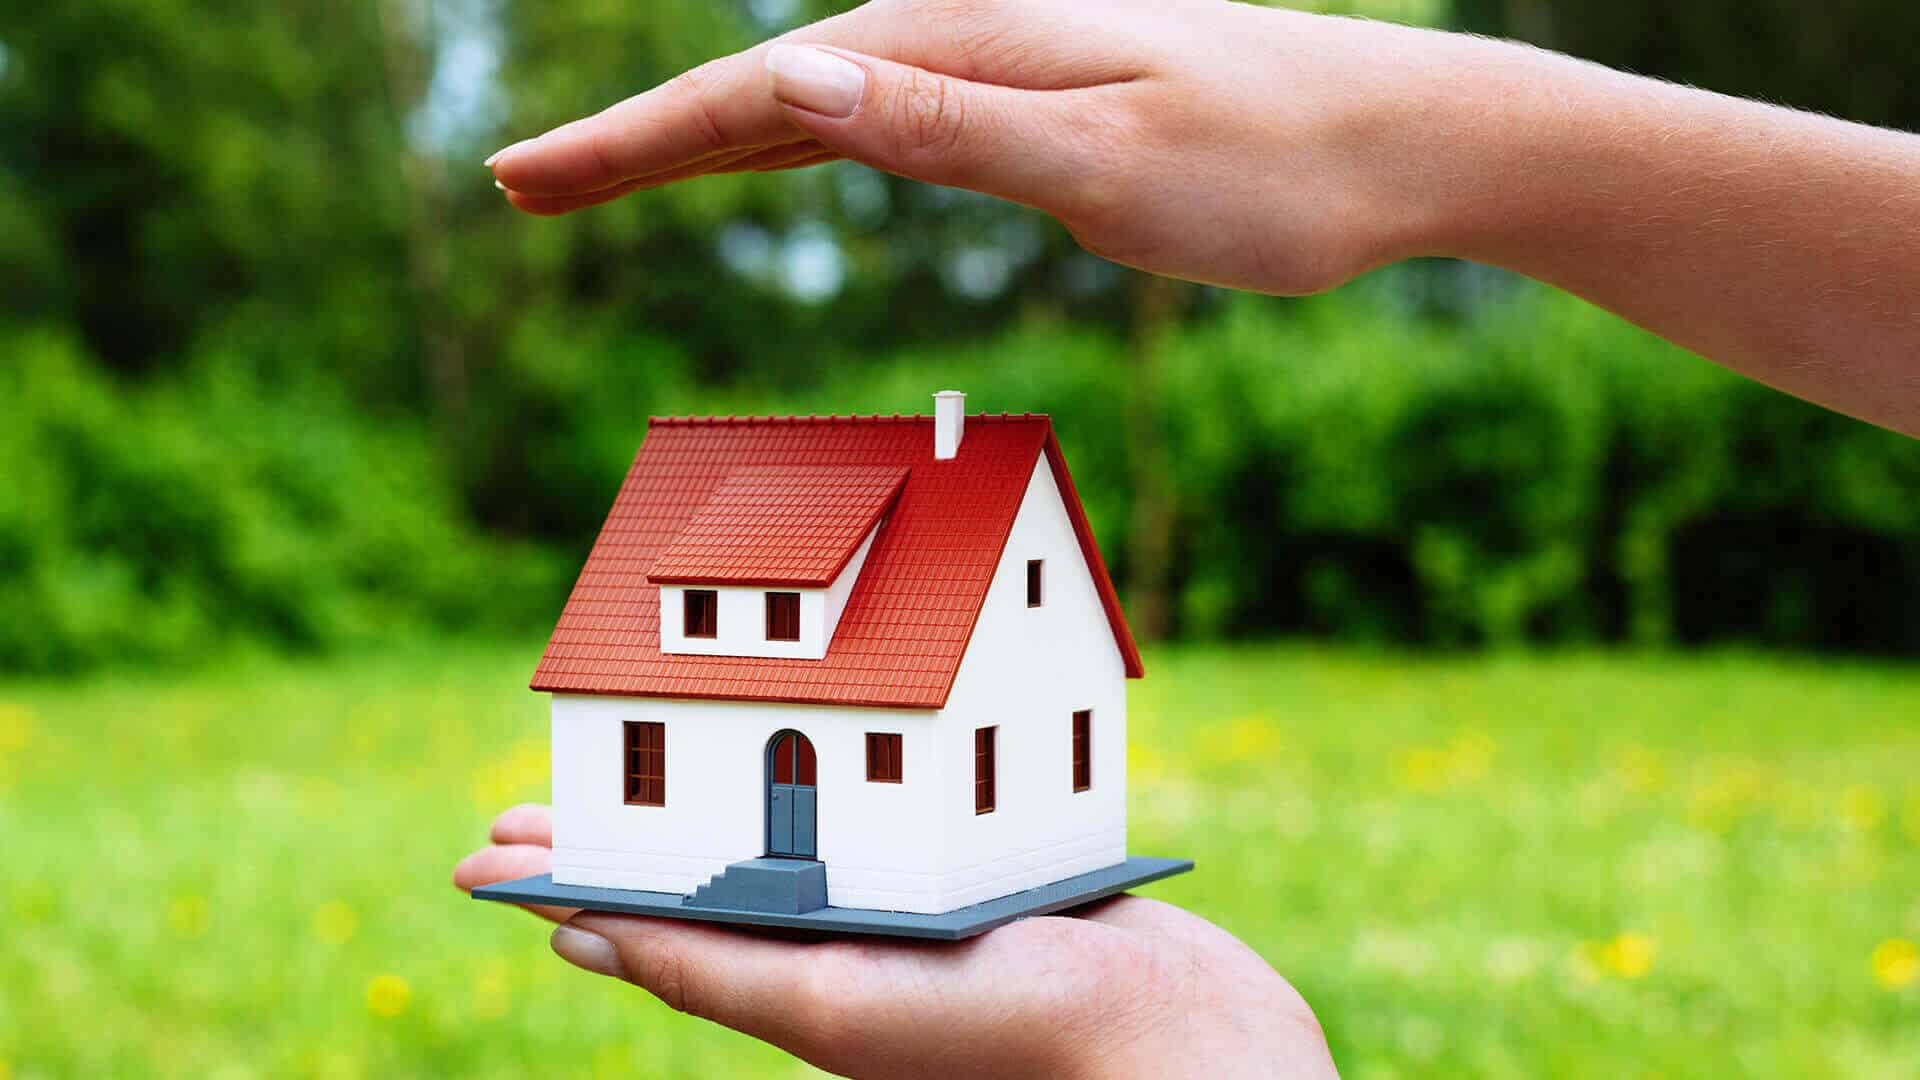 Quels sont les différents types d’assurance habitation ?